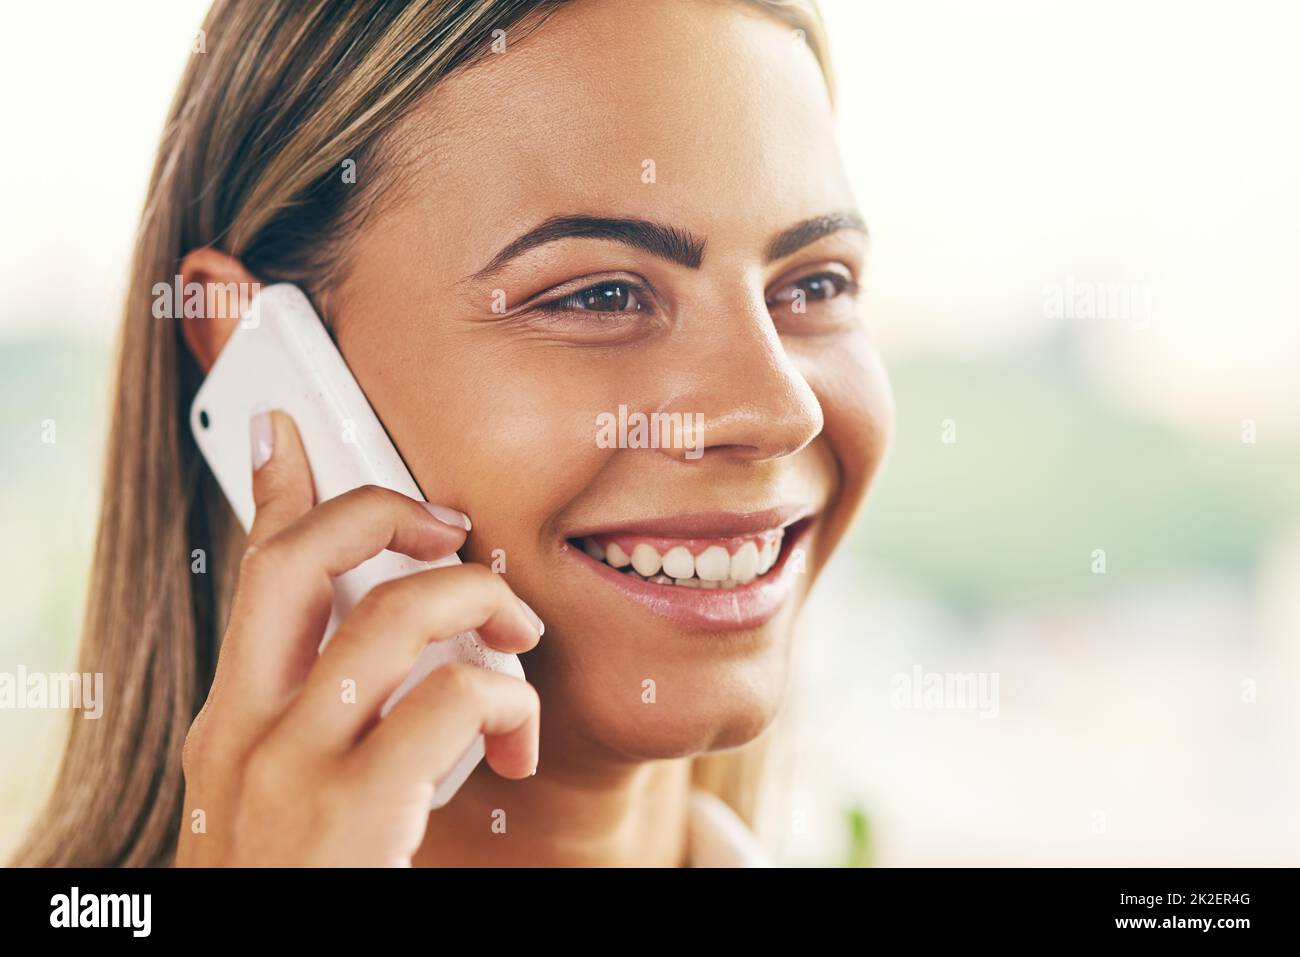 Was für eine angenehme Überraschung, mit Ihnen zu sprechen. Aufnahme einer fröhlichen jungen Frau, die tagsüber in einem Café stand und auf ihrem Handy sprach. Stockfoto